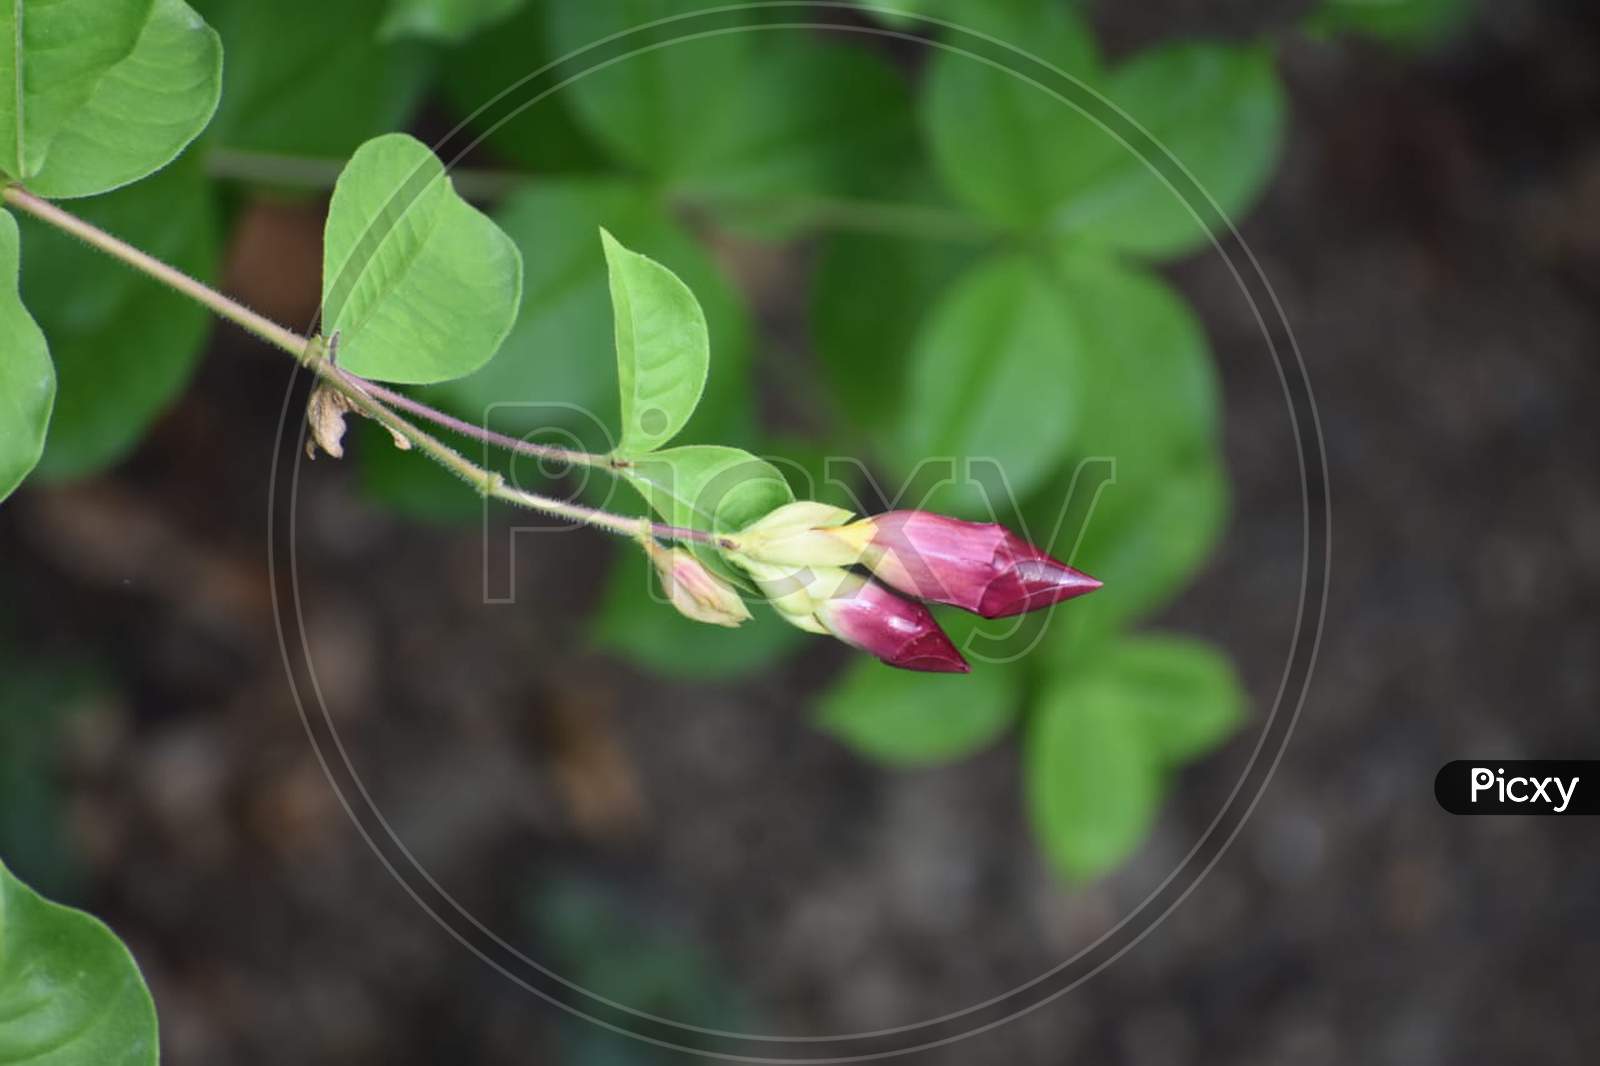 Rose bud with leaf